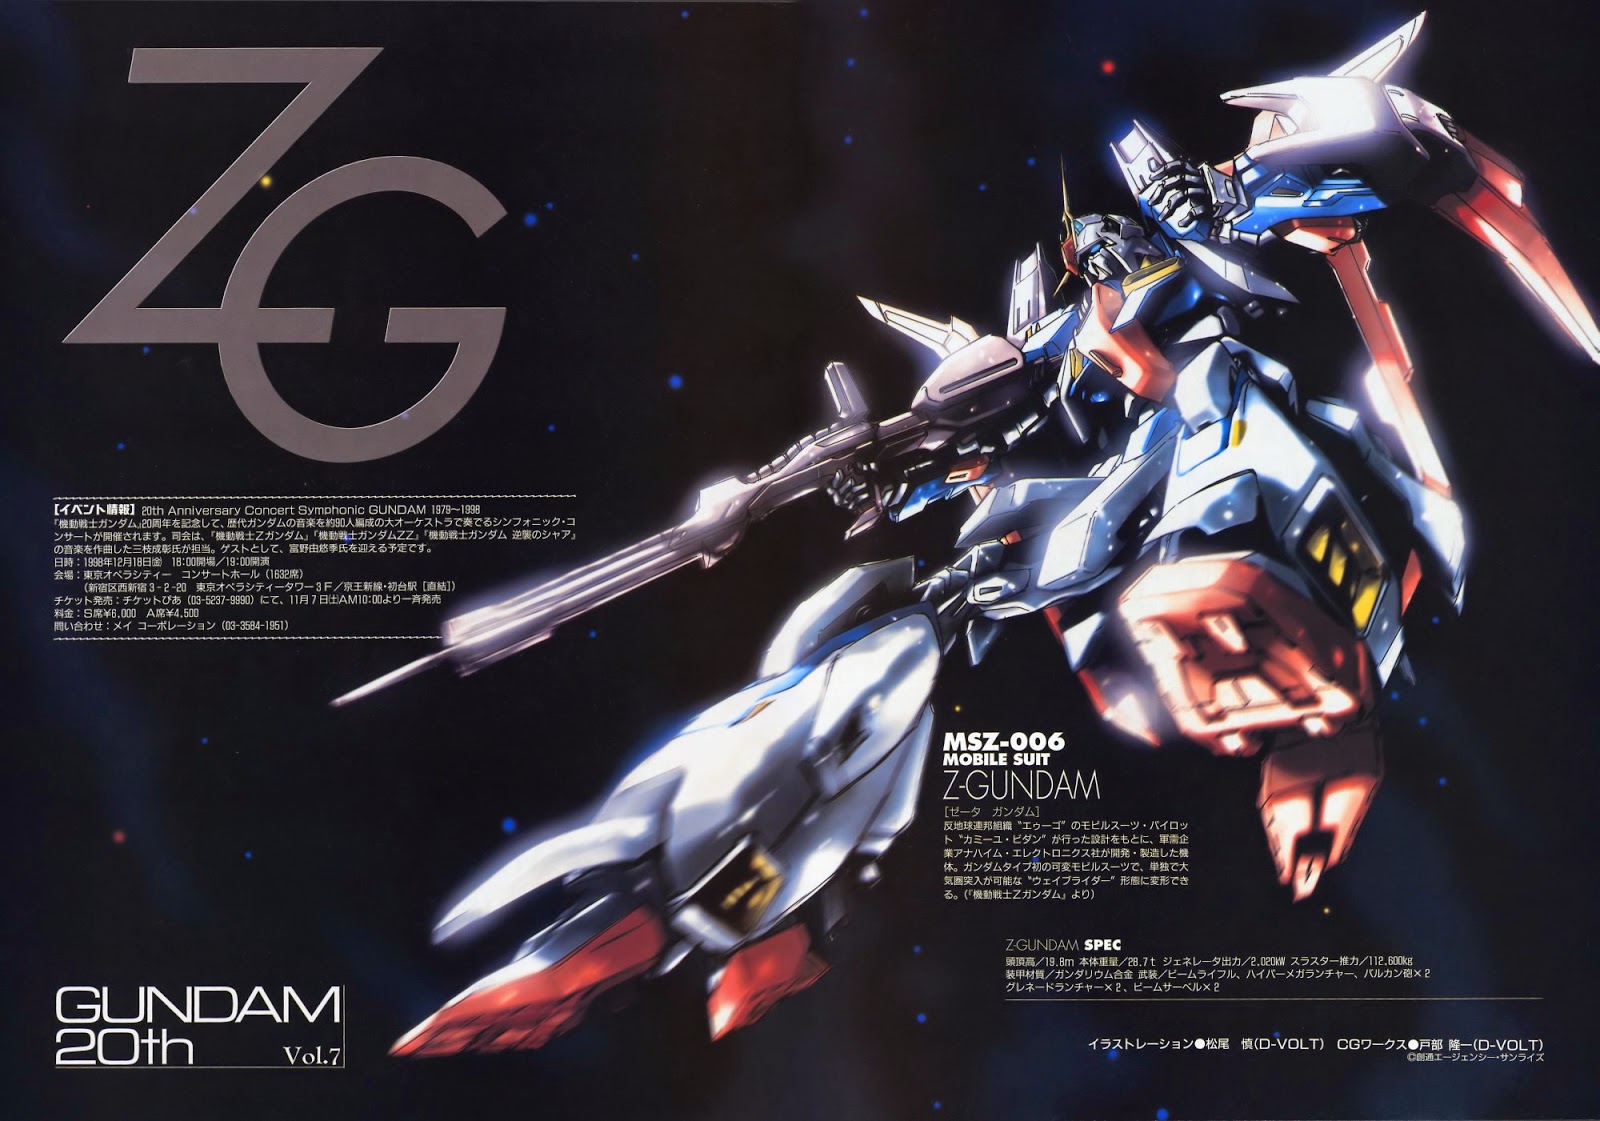 Zeta Gundam Wallpaper no Texts Kits Collection News and Reviews